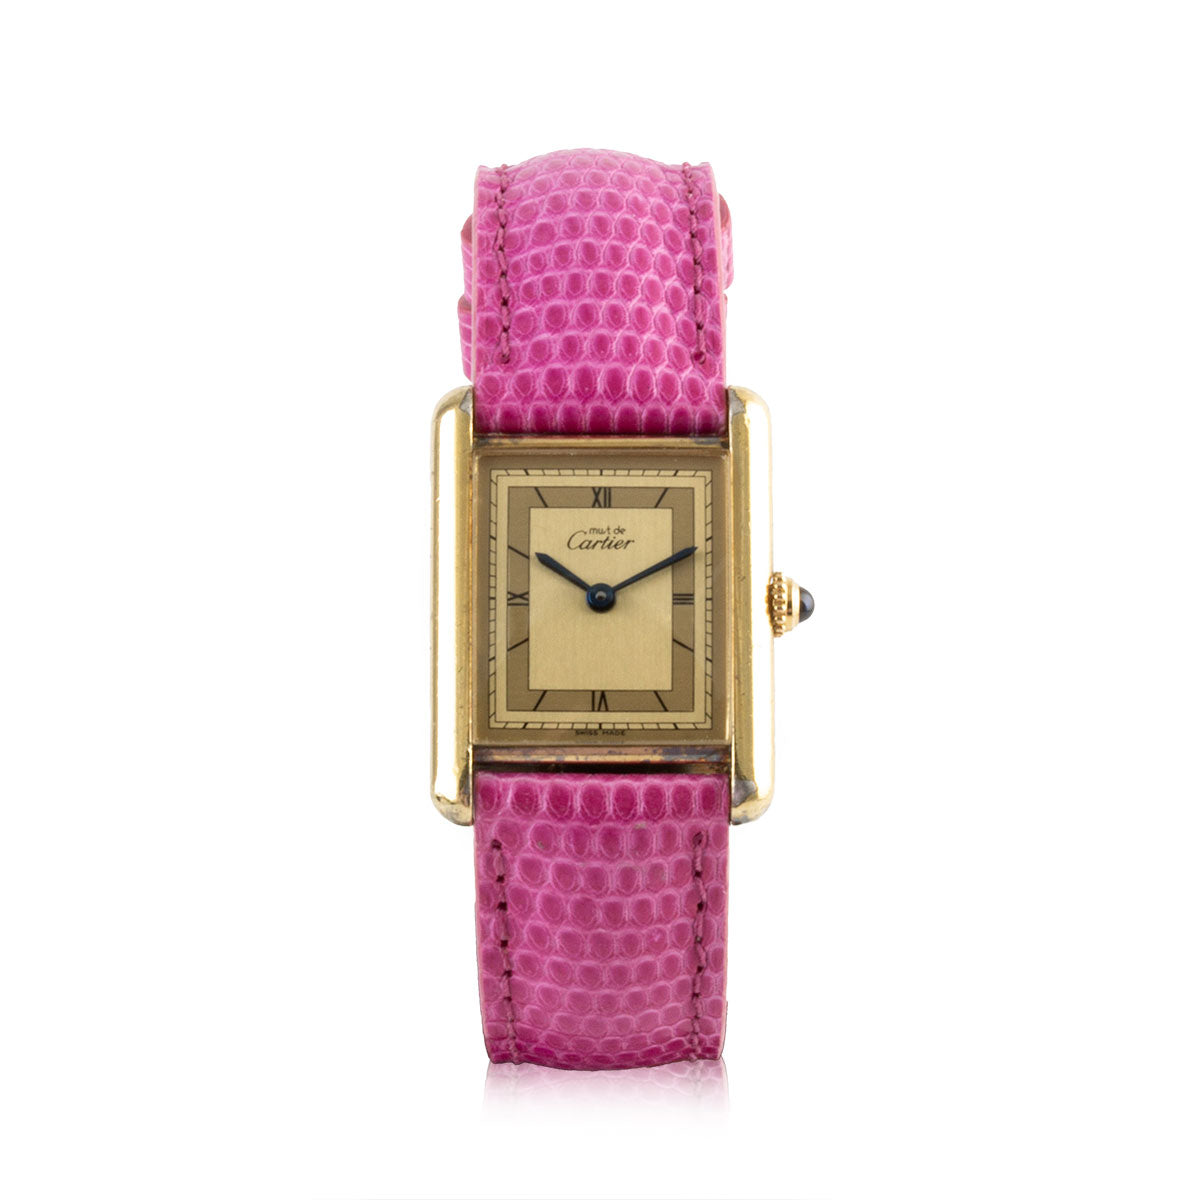 Second-hand watch - Cartier - Tank Must - 2400€